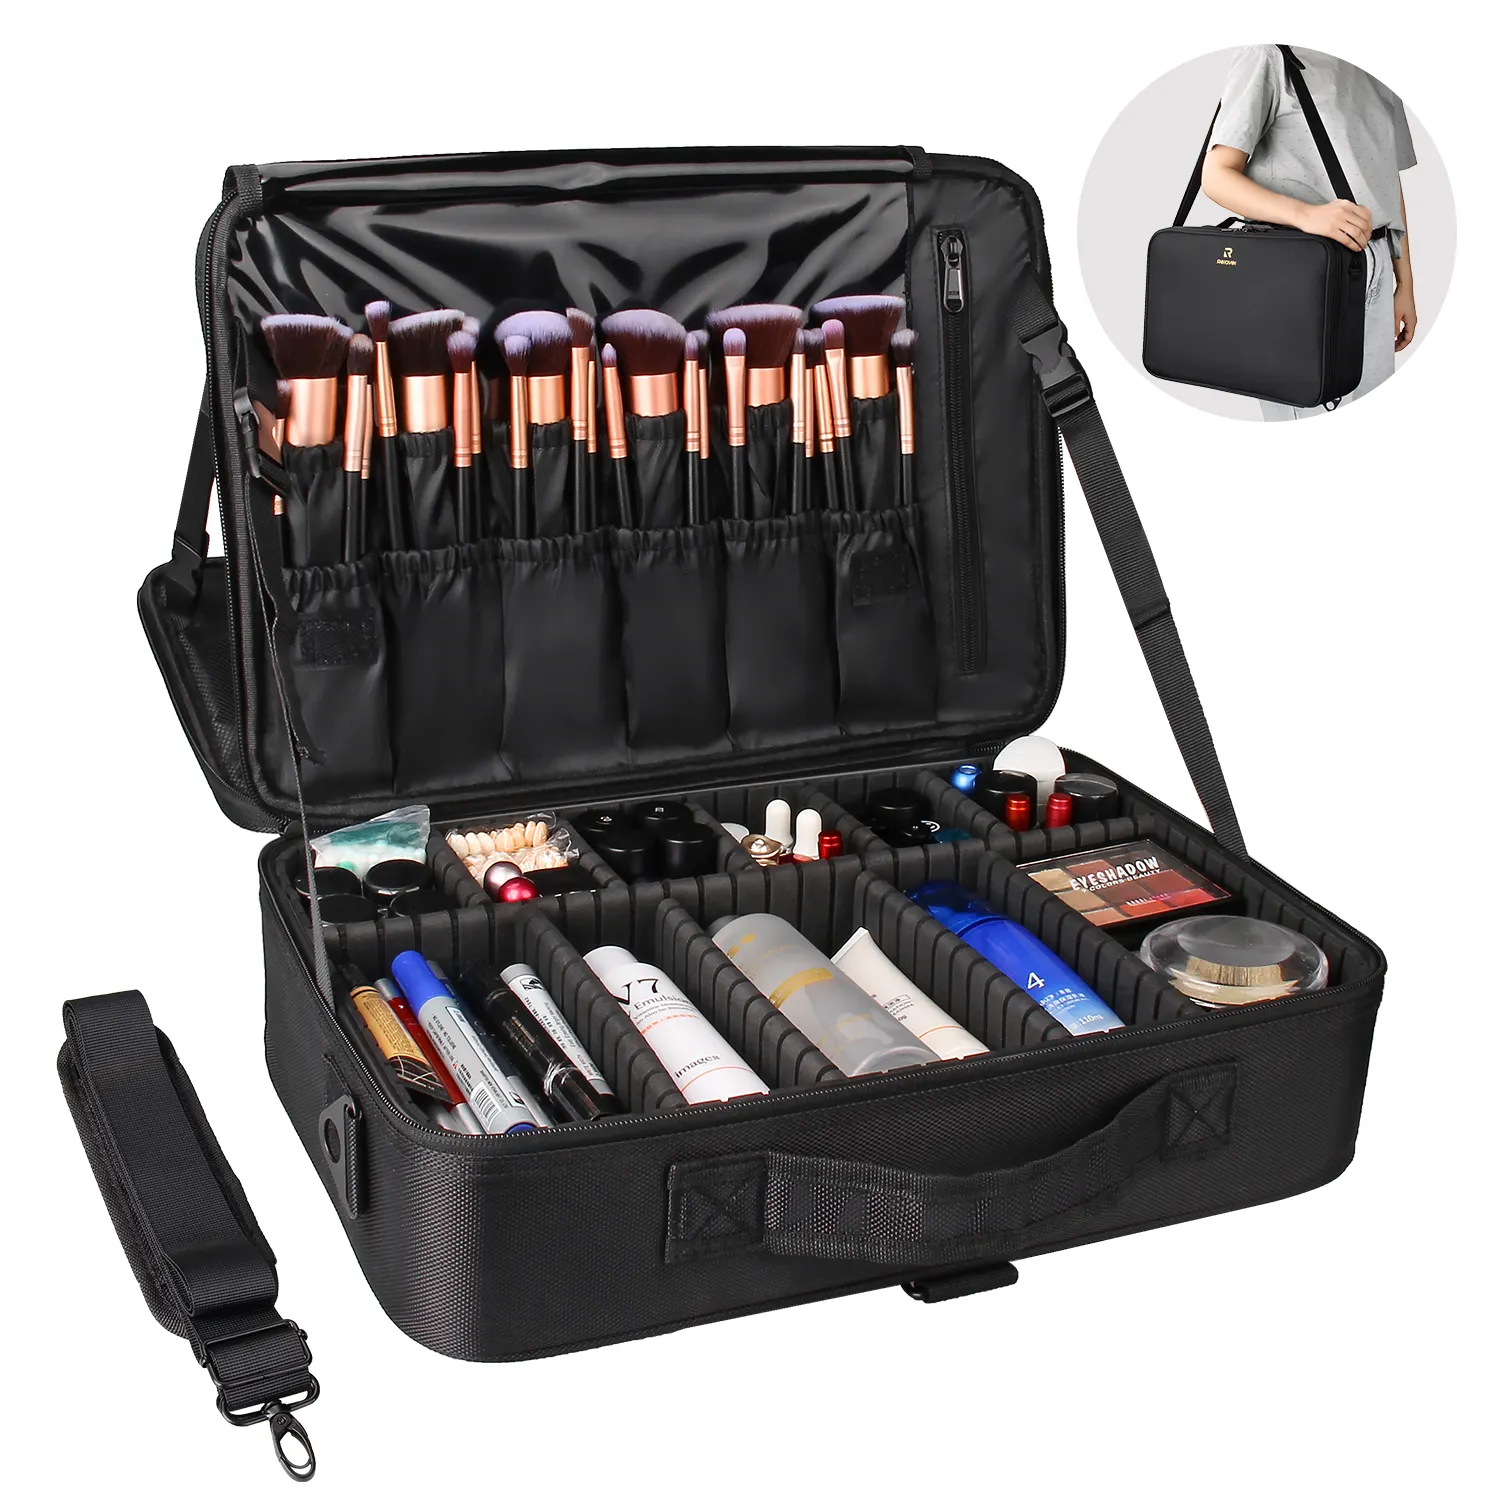 Relavel 3 capa de gran capacidad maquillaje caso extraíble con compartimento portátil caja de belleza para las mujeres de viaje maquillaje tren caso